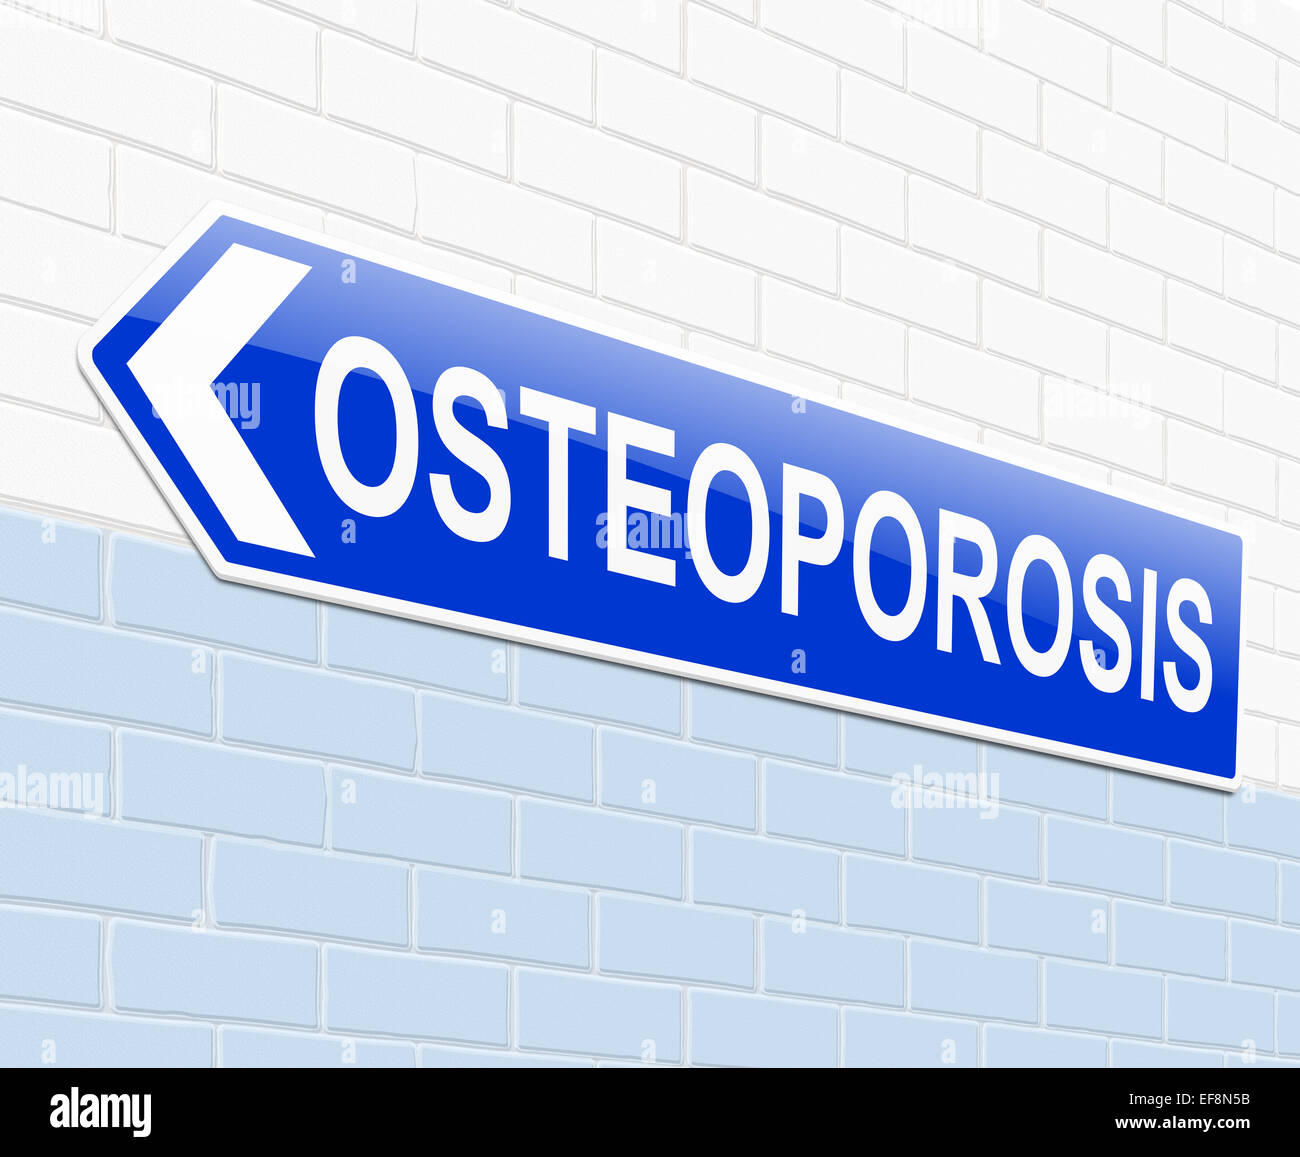 Il concetto di osteoporosi. Foto Stock